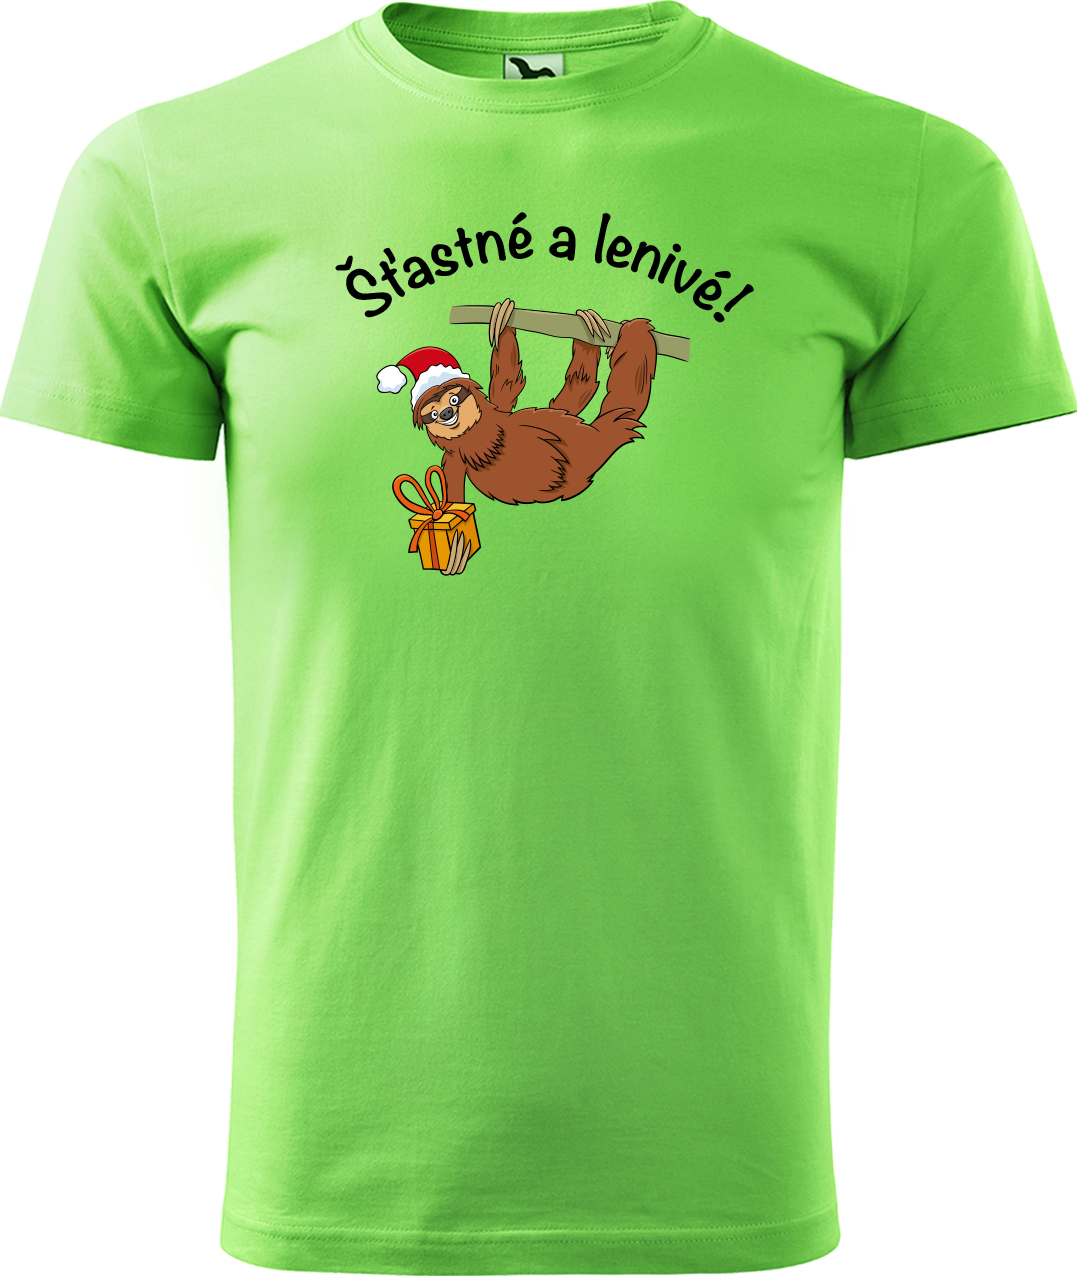 Pánské vánoční tričko - Šťastné a lenivé! Velikost: 4XL, Barva: Apple Green (92)